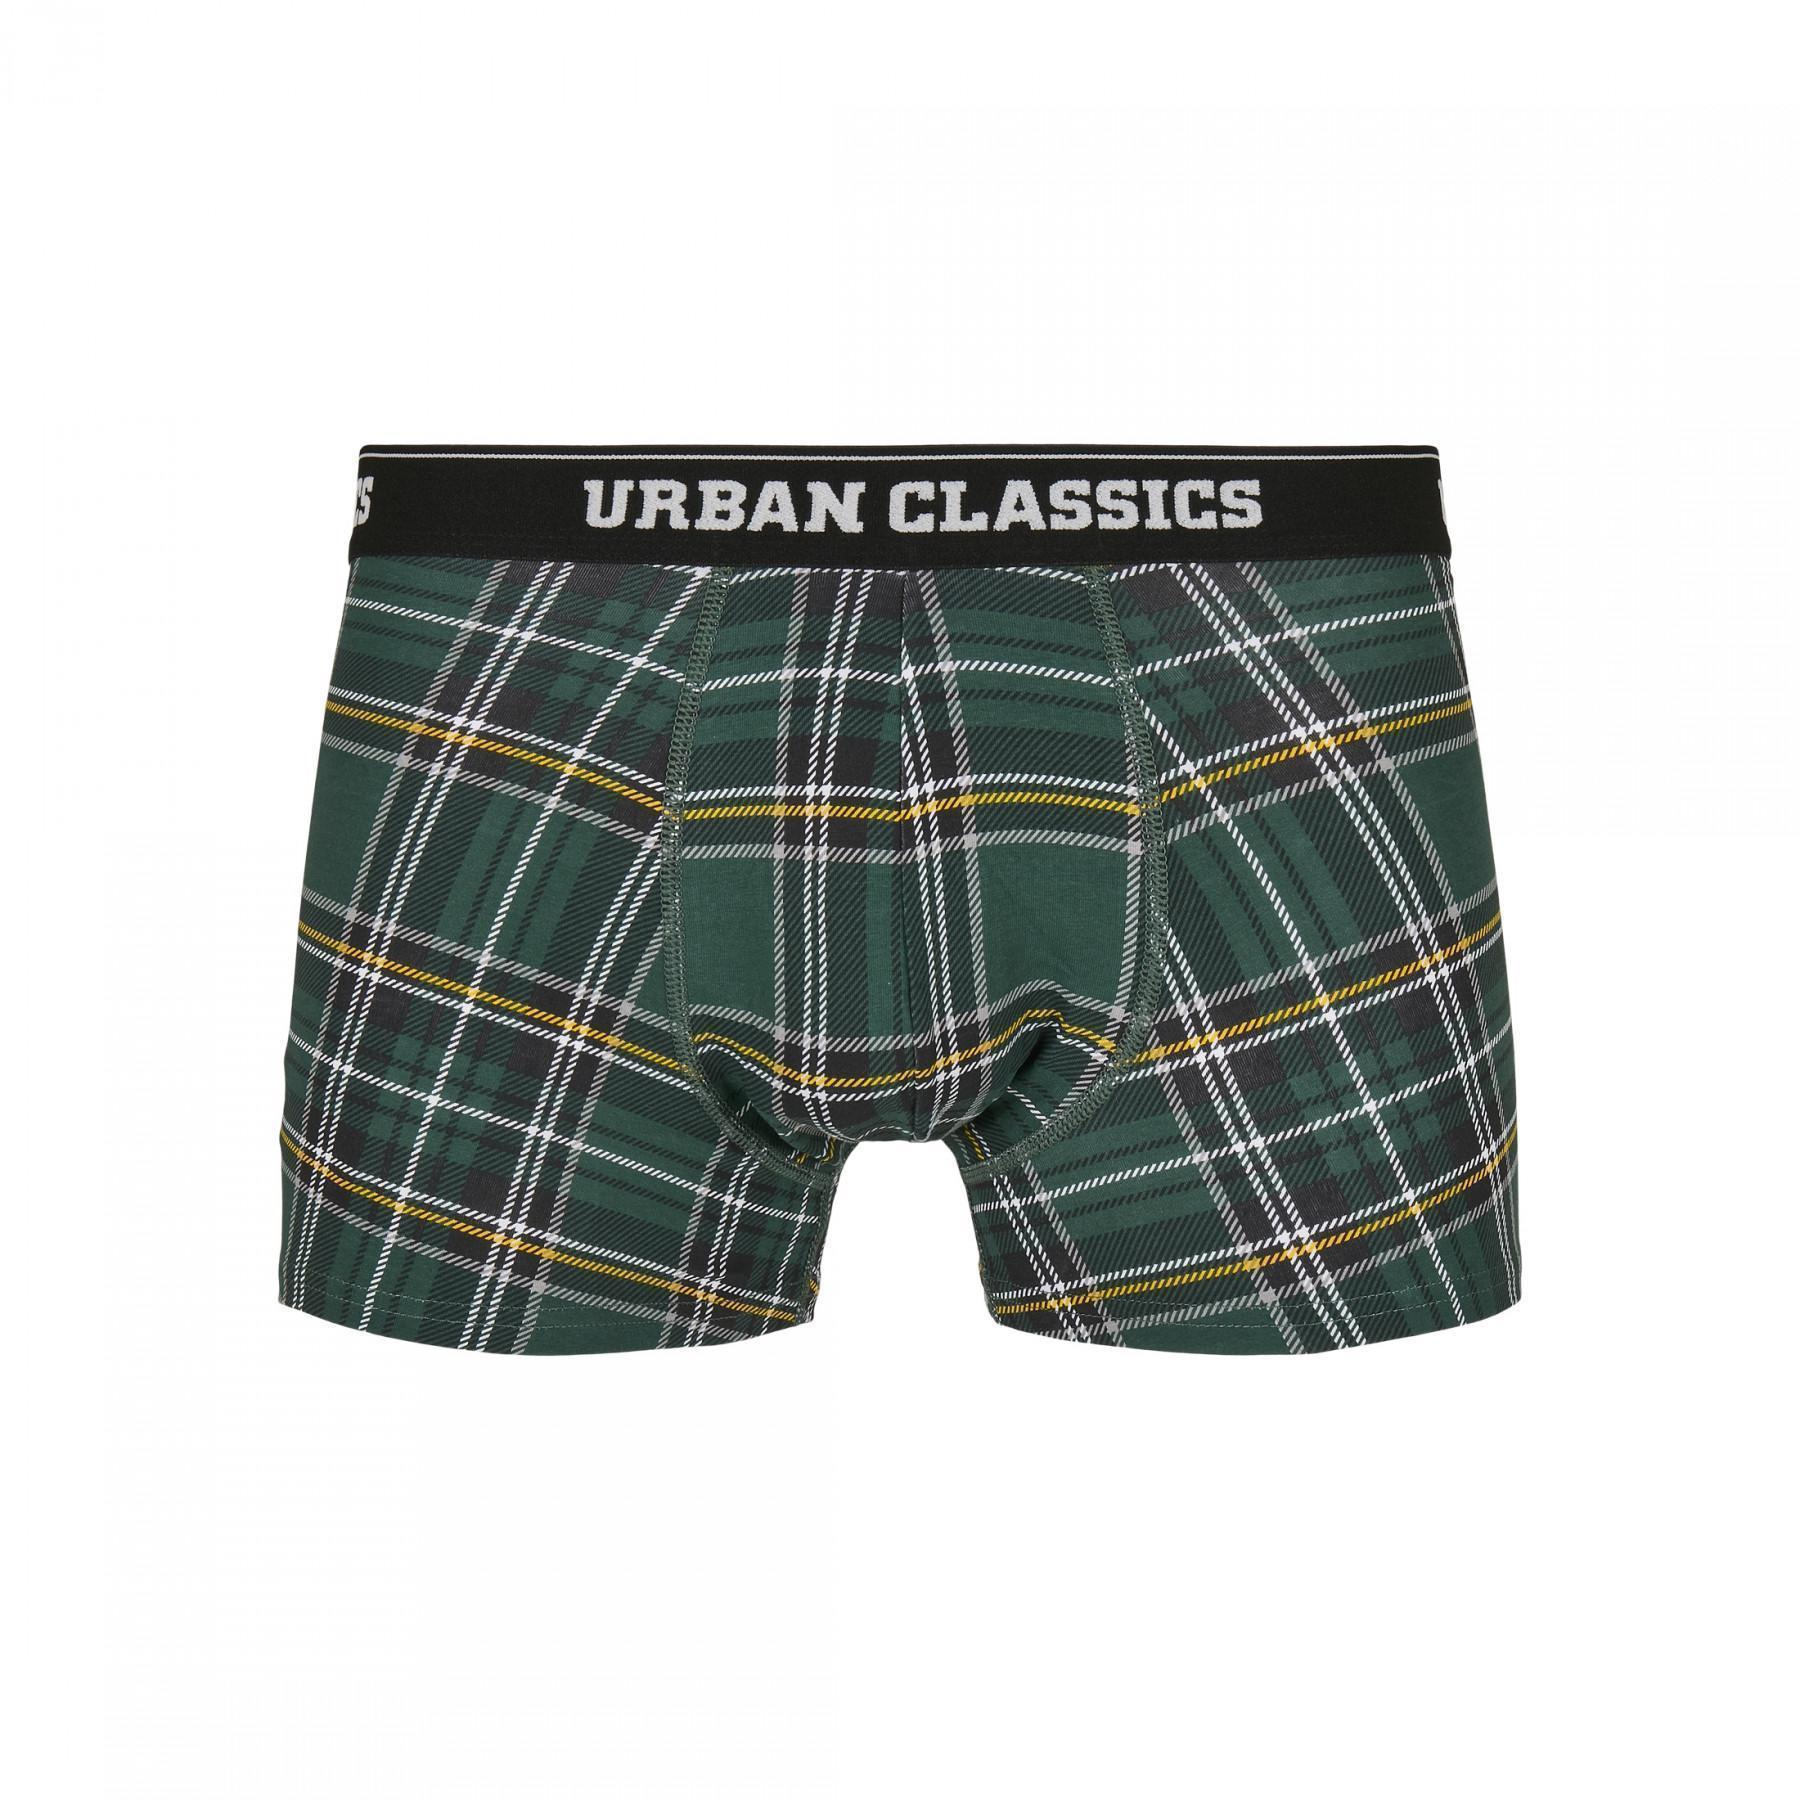 Boxers Urban Classics boxer shorts (3pcs)